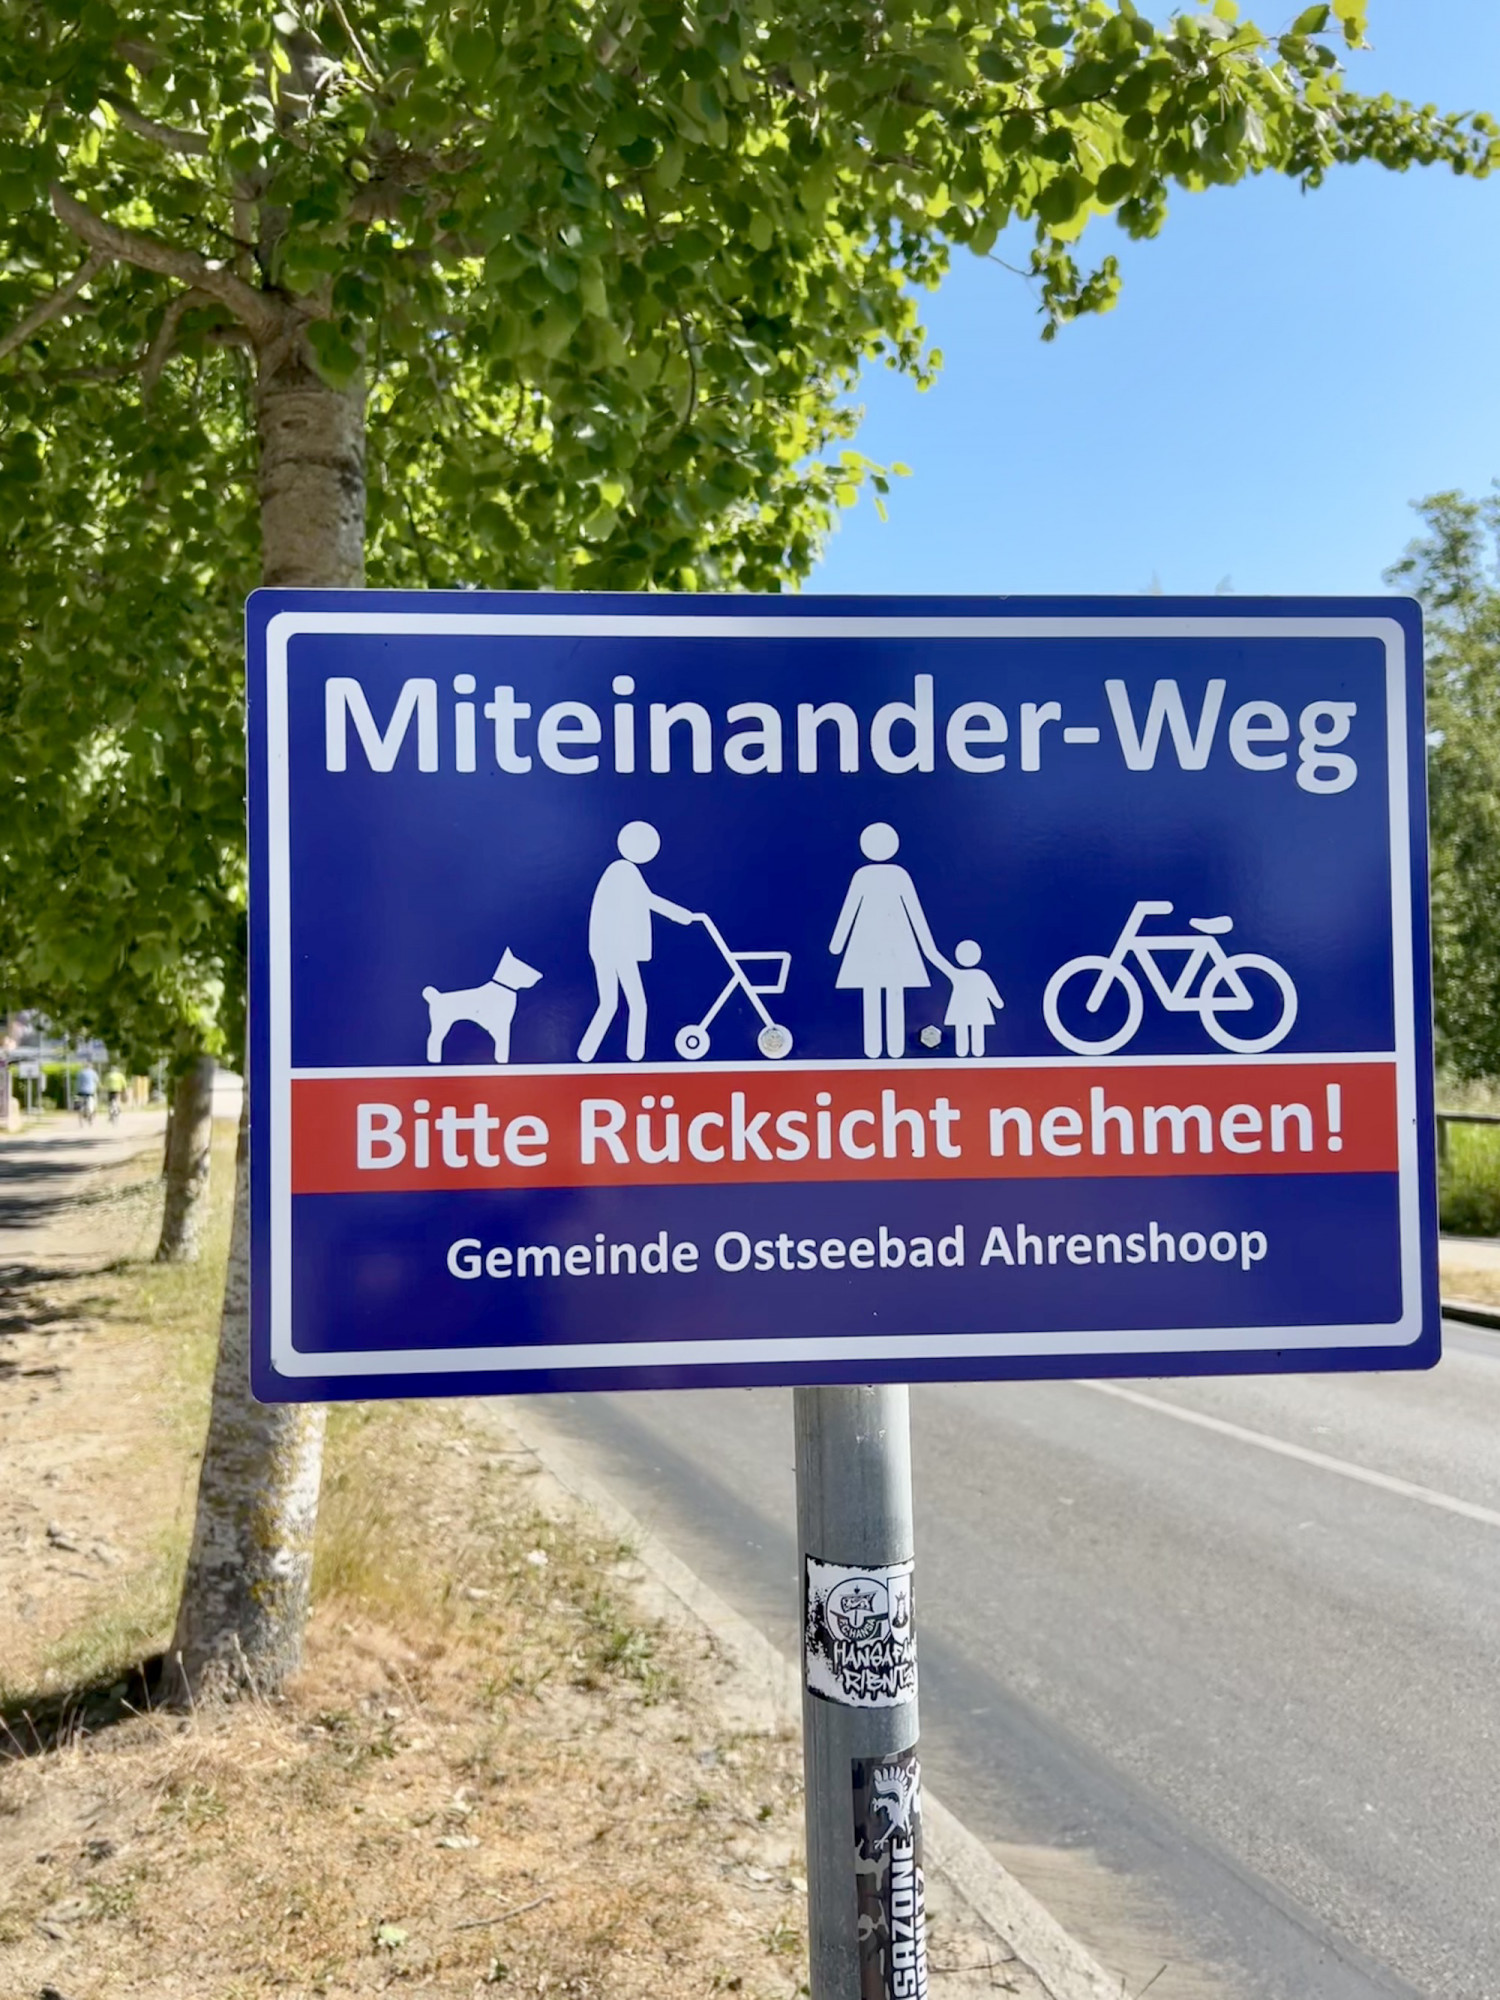 Foto eines Schildes auf dem ein Hund, ein Mensch mit Rollator, eine Person mit Kind und ein Fahrrad zu sehen sind. Aufschrift: 
Miteinander-Weg
Bitte Rücksicht nehmen!
Gemeinde Ostseebad Ahrenshoop